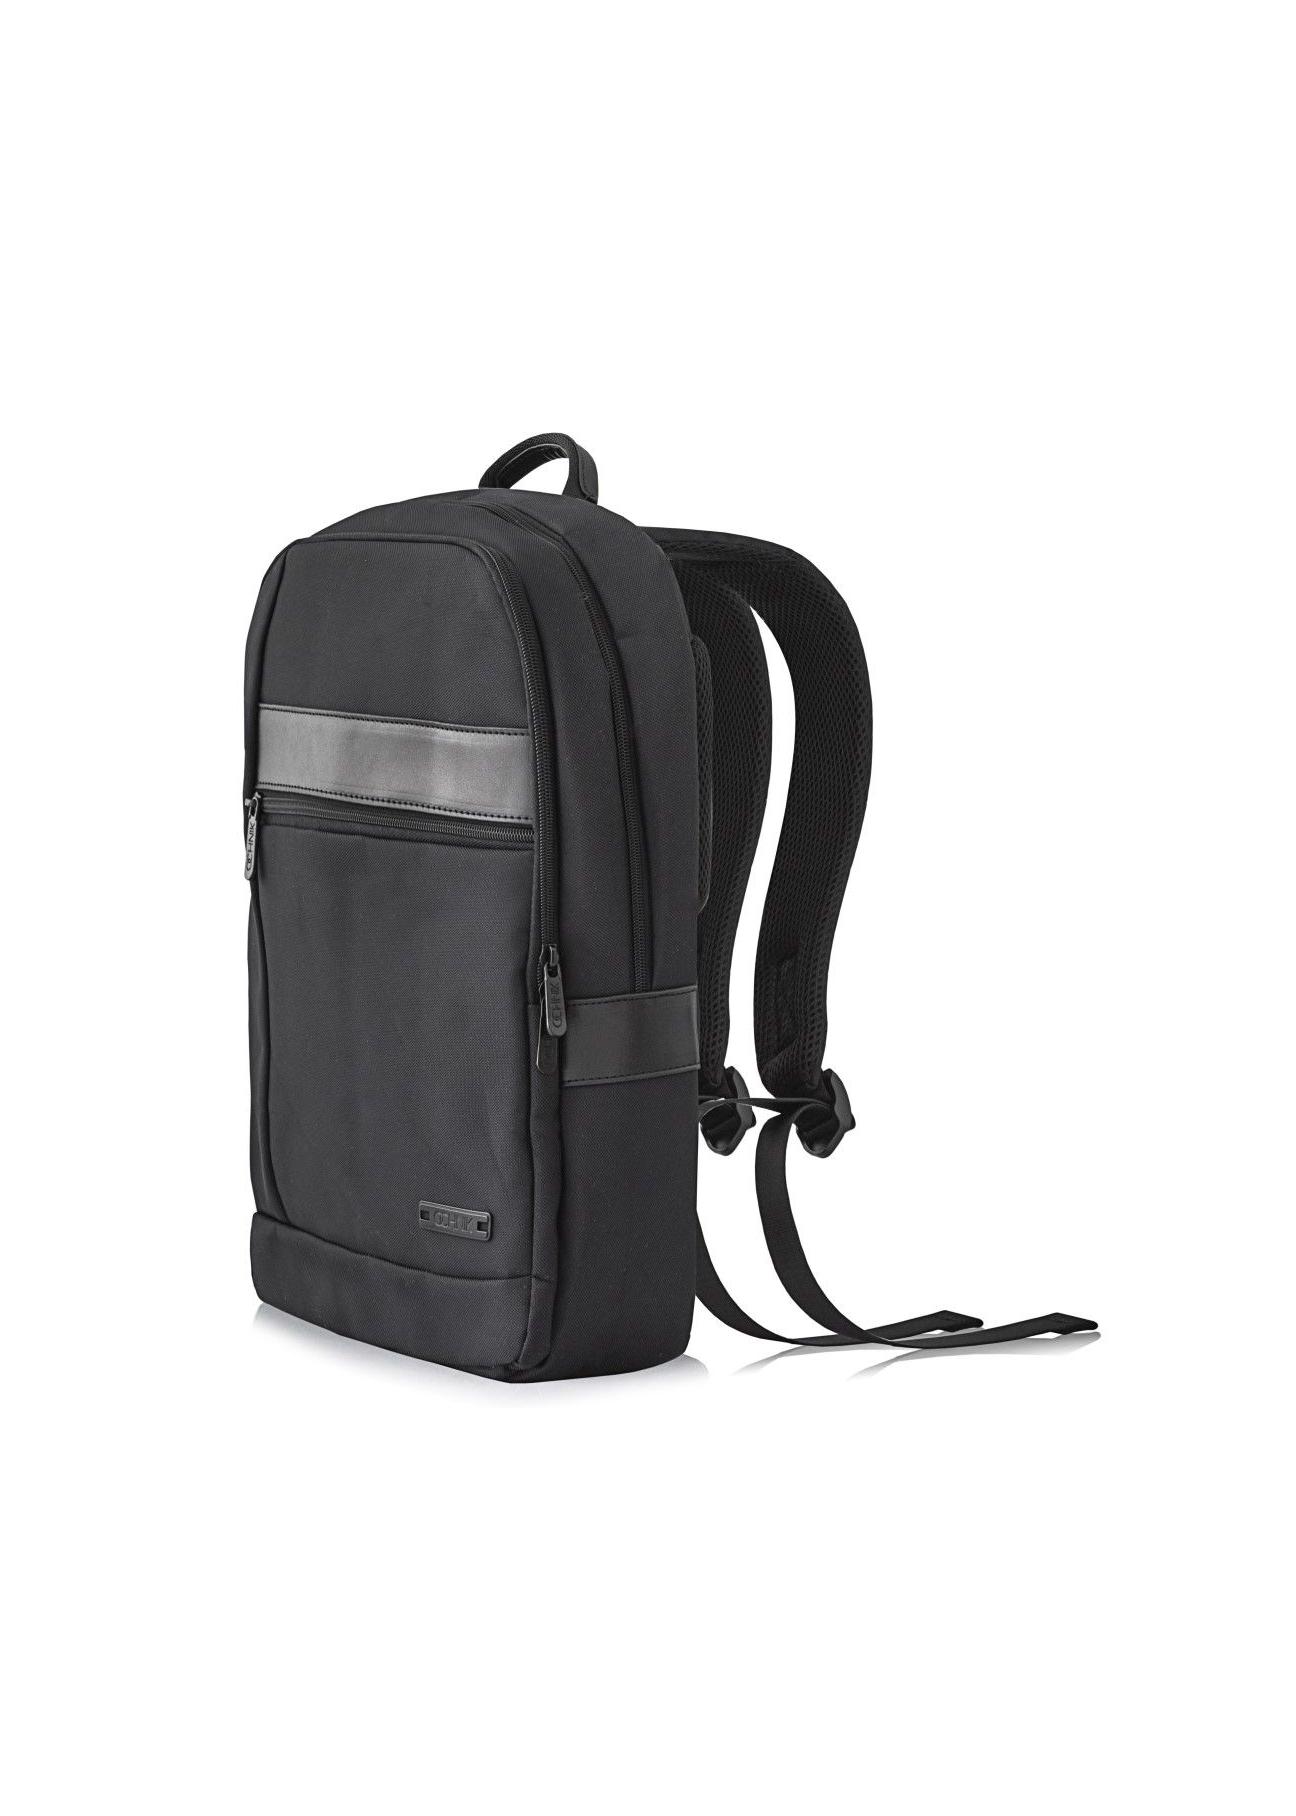 Czarny plecak męski PLCMN-0001A-99(Z23)